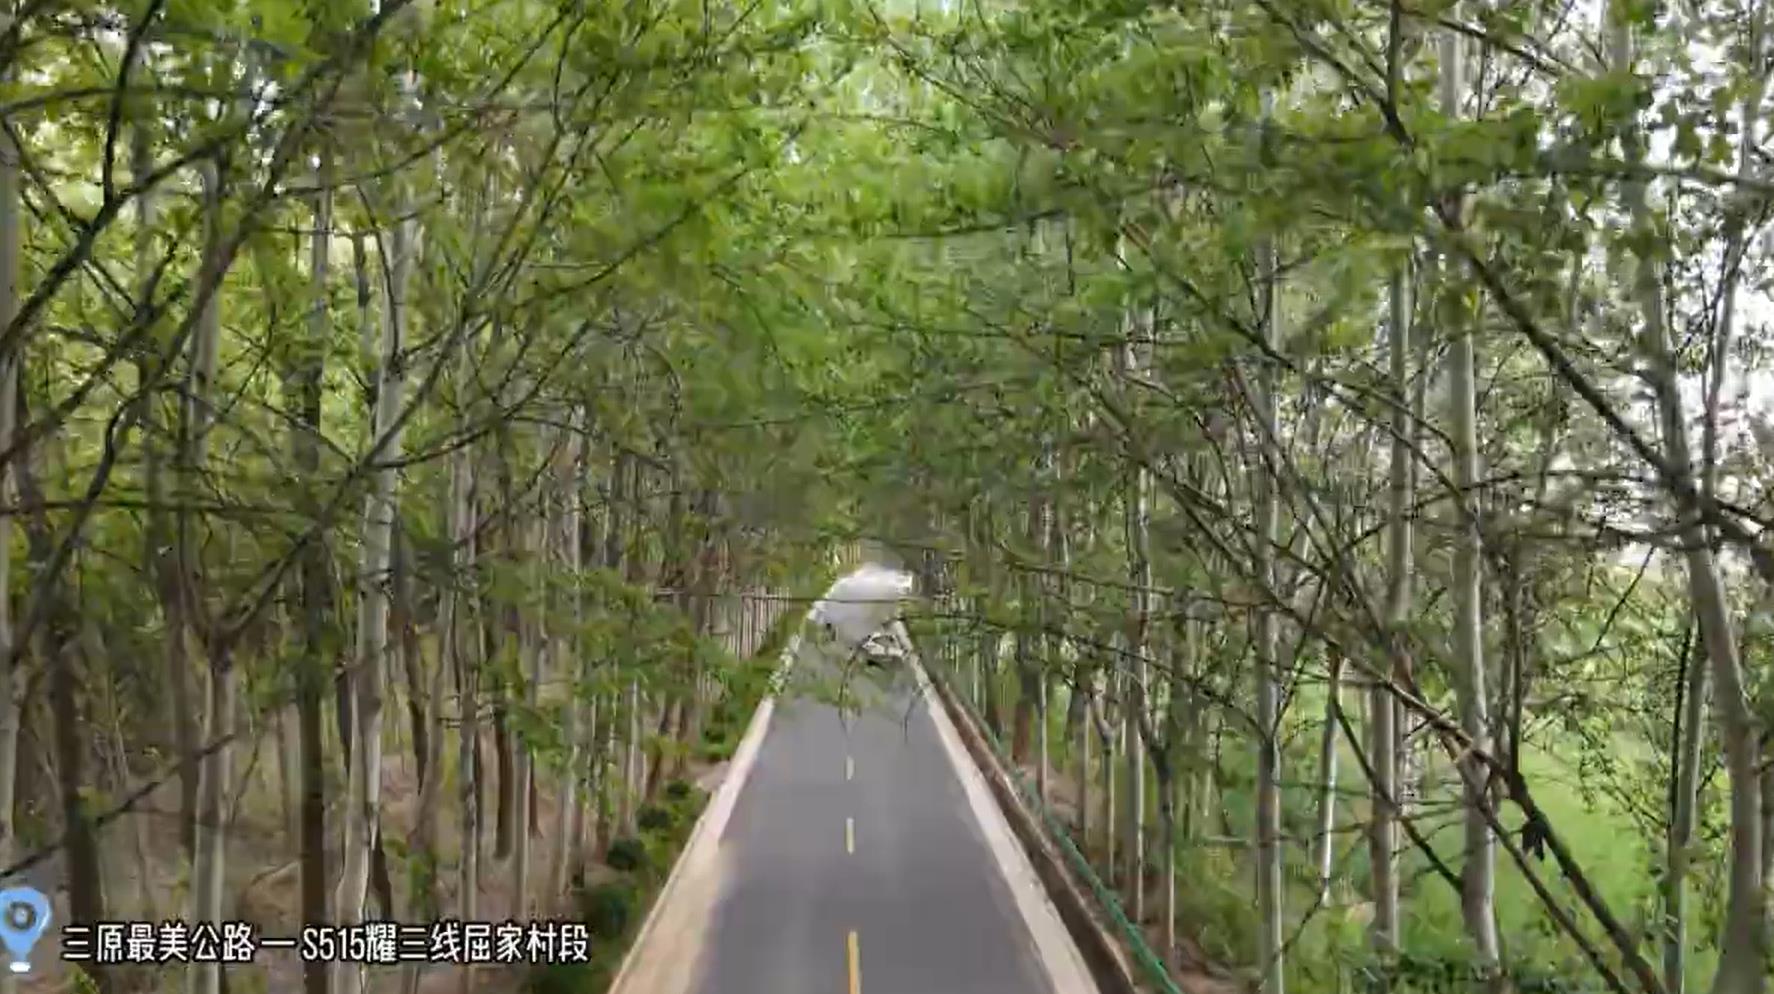 【視頻】三原這條公路帶你感受“最美的風景在路上” 